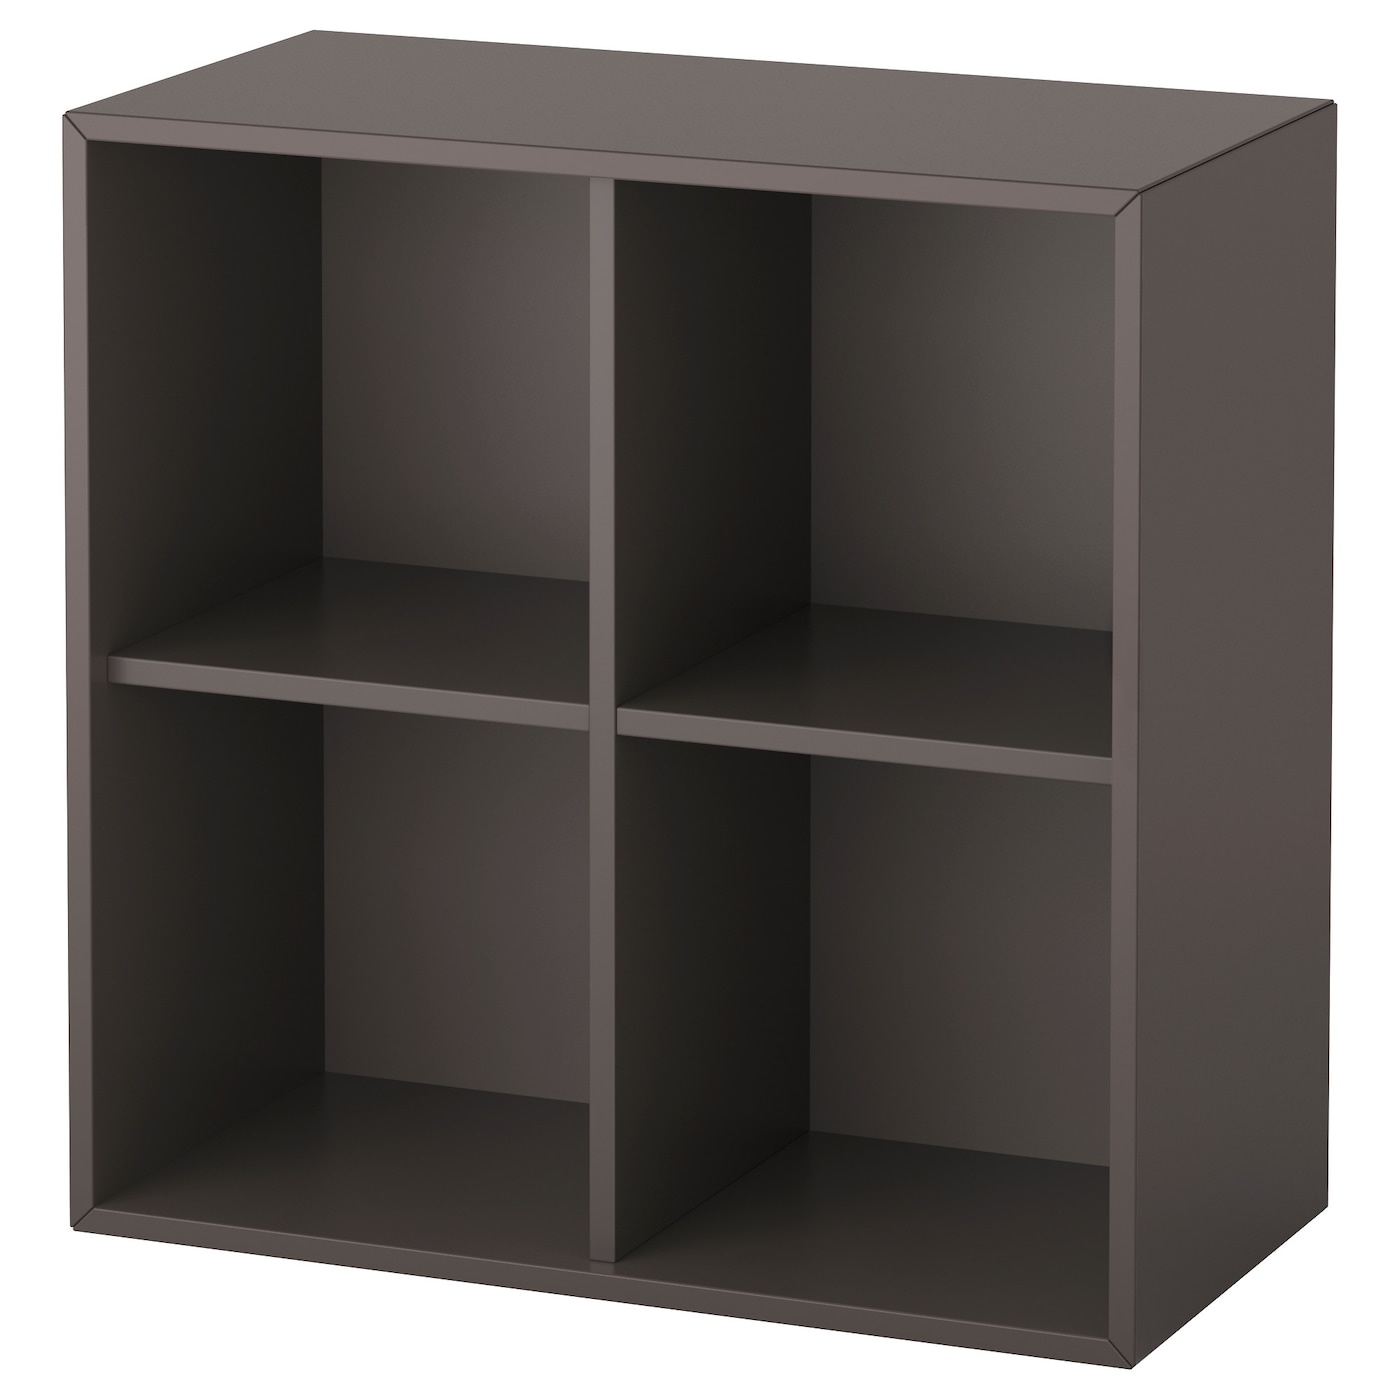 Настенный стеллаж - IKEAEKET, 70x35x70 см, темно-серый, ЭКЕТ ИКЕА